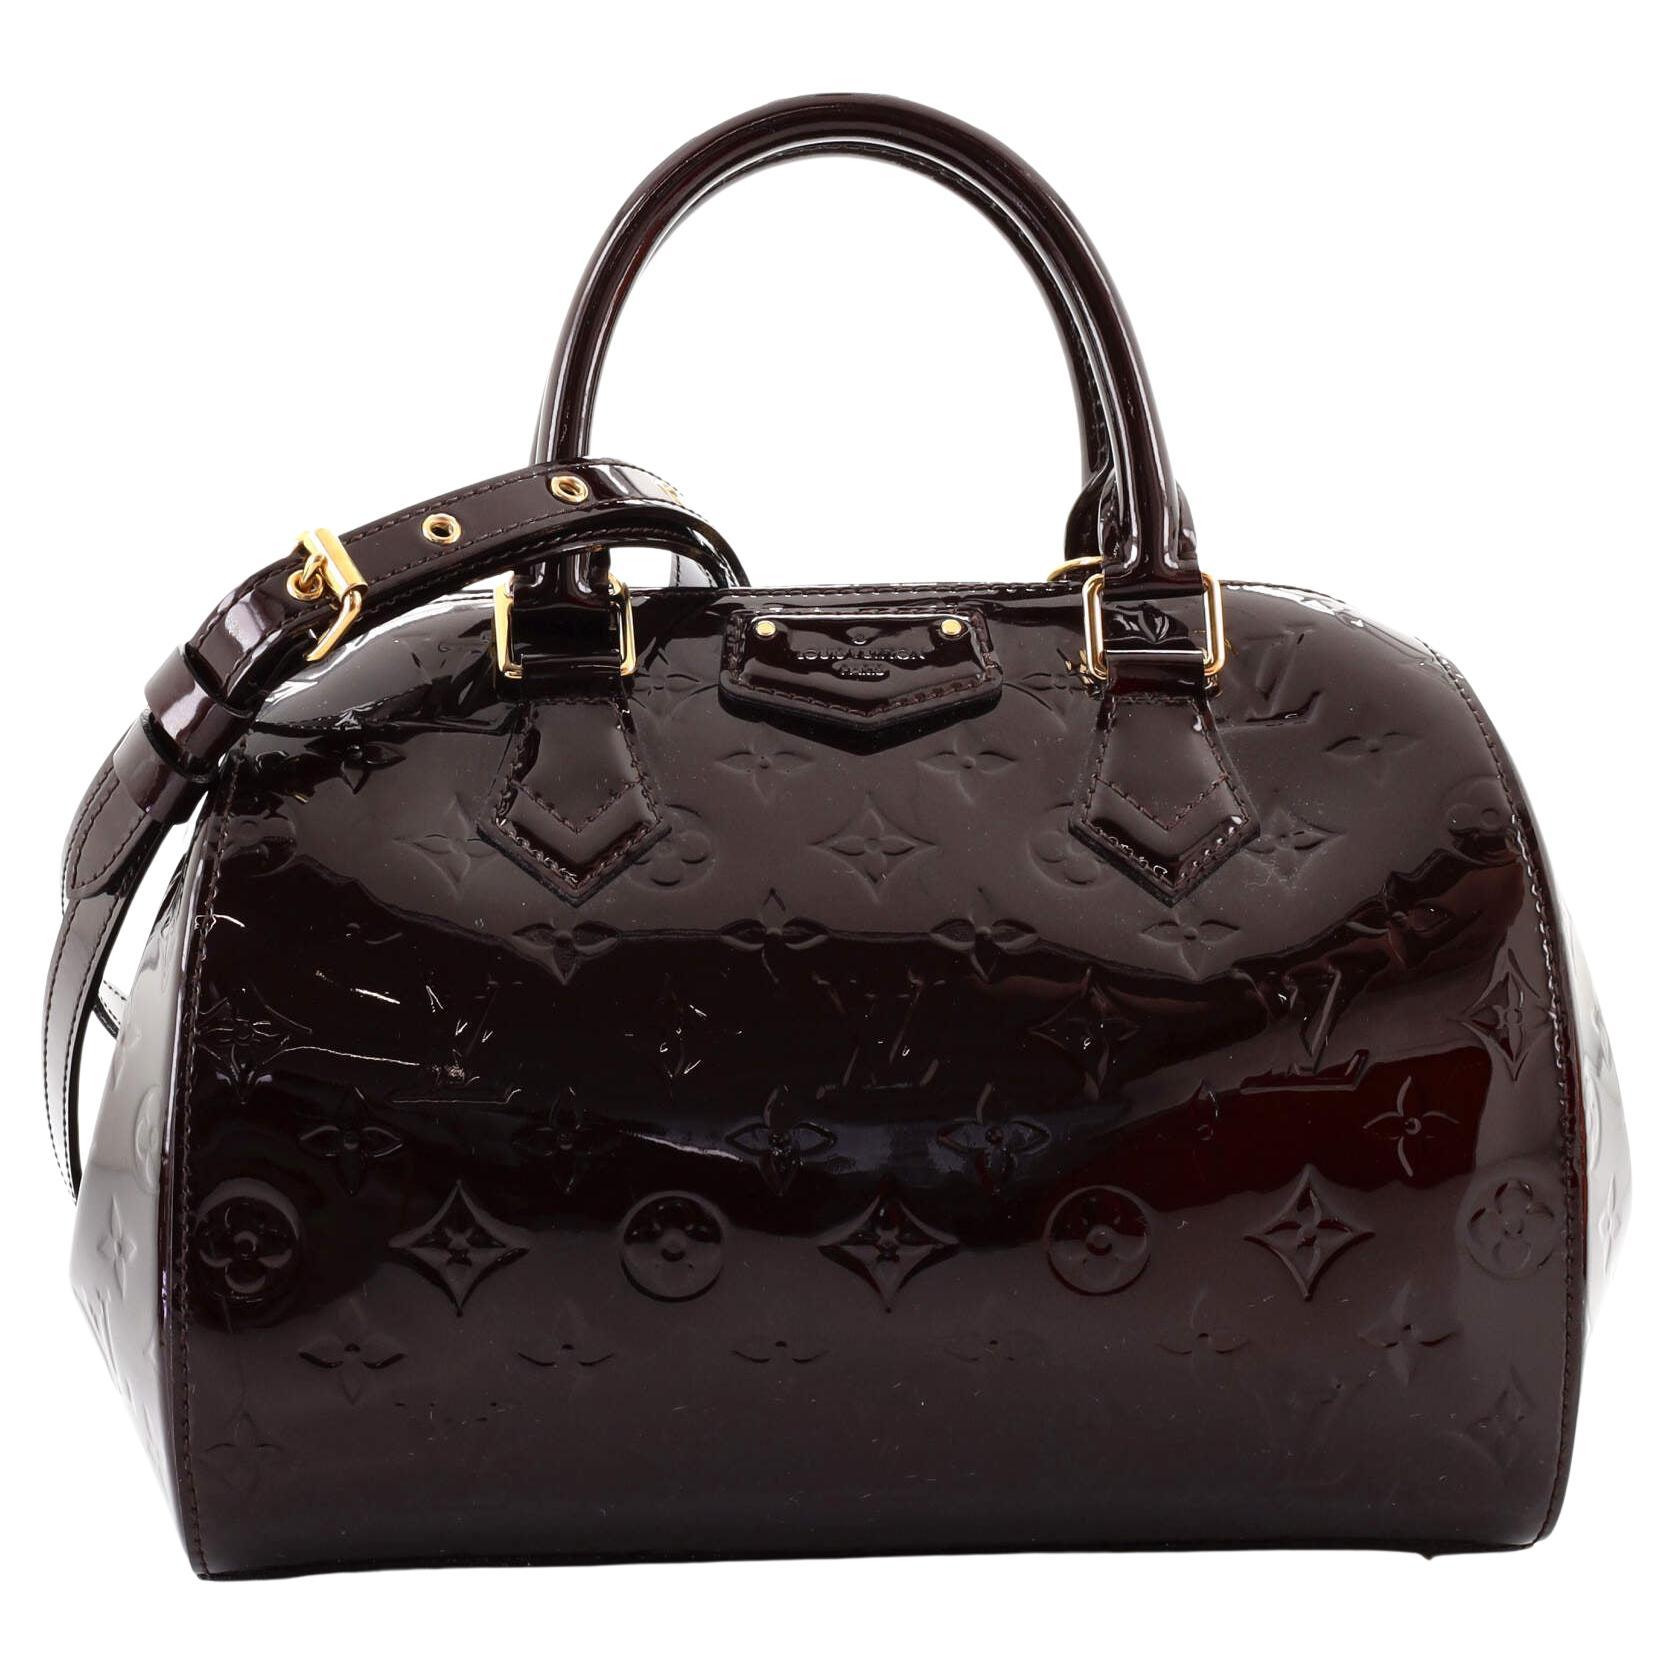 Authenticated used Louis Vuitton Louis Vuitton Montebello PM Handbag M90167 Monogram Vernis Dune 2way Shoulder Bag Patent Leather, Adult Unisex, Size